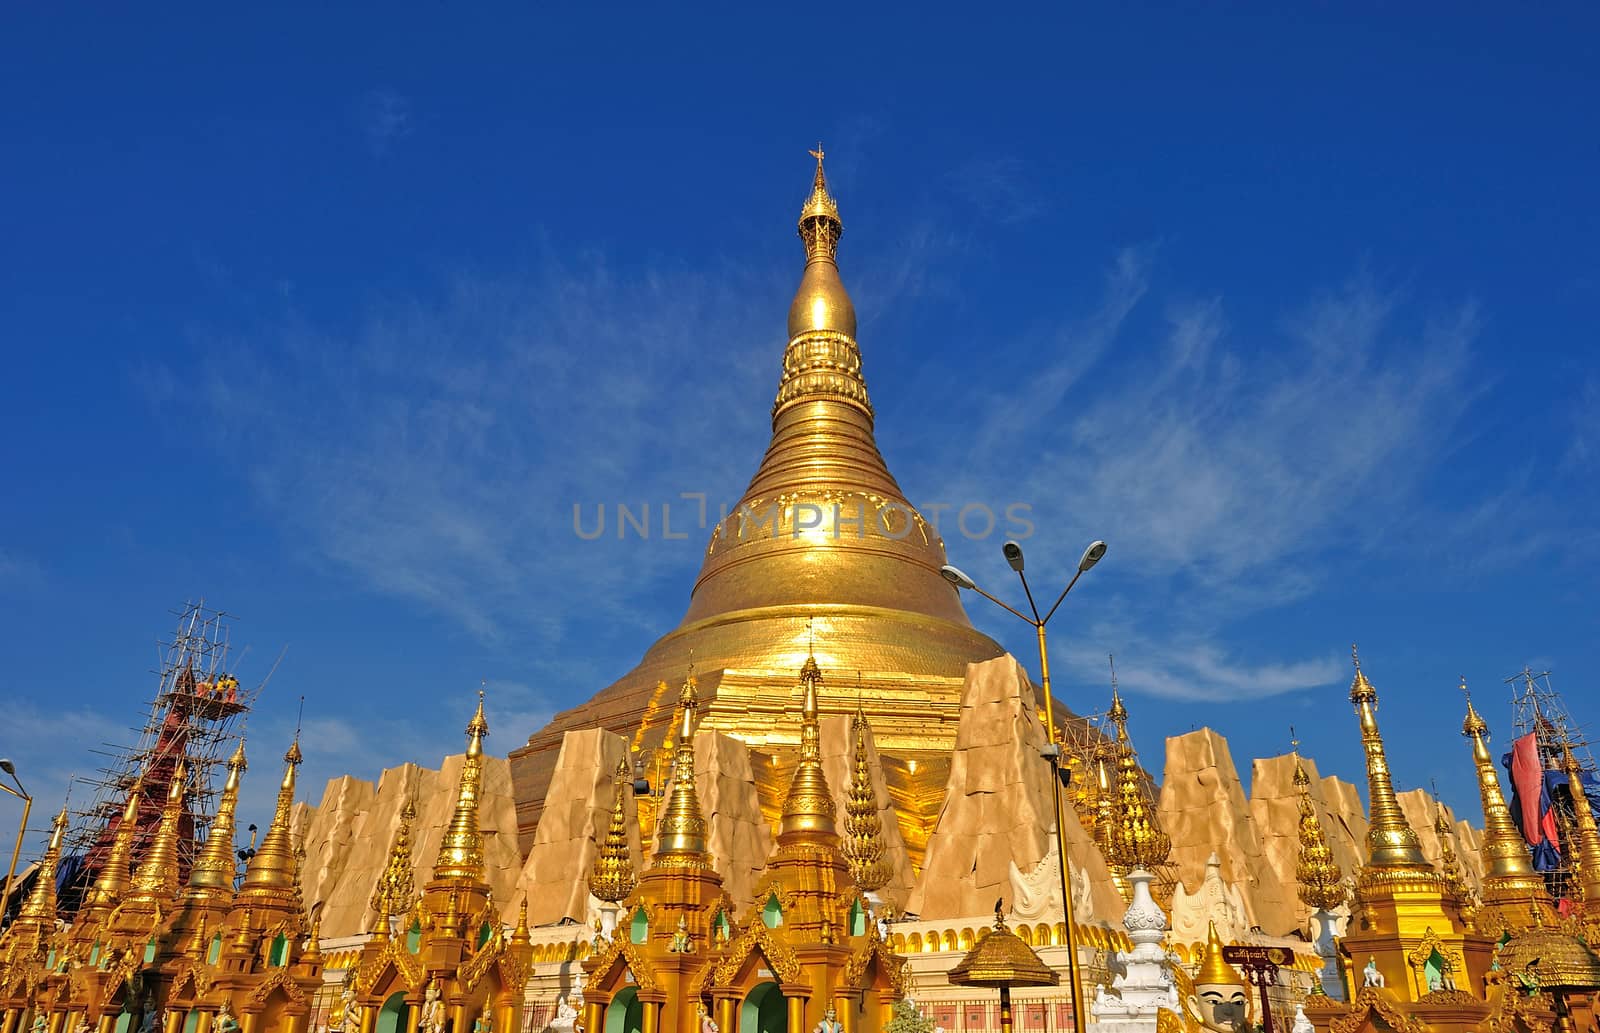 Shwedagon golden pagoda, Yangon,Myanmar